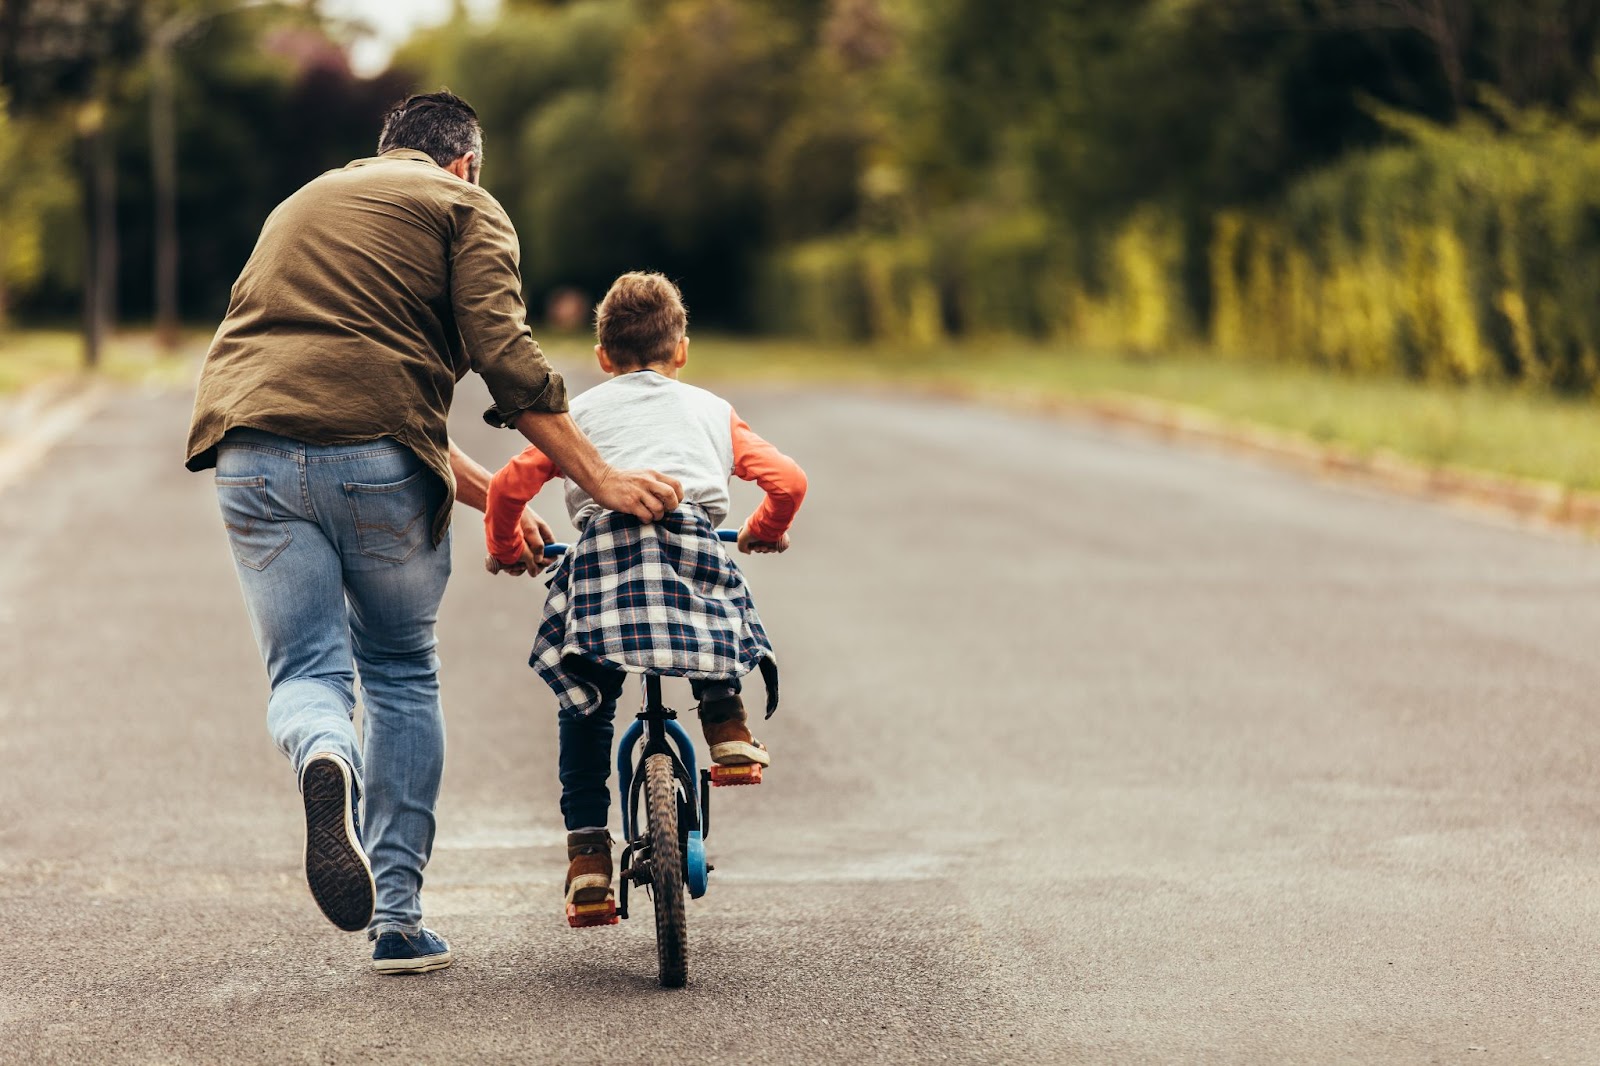 Папа учит сына кататься на велосипеде – по-английски cycling